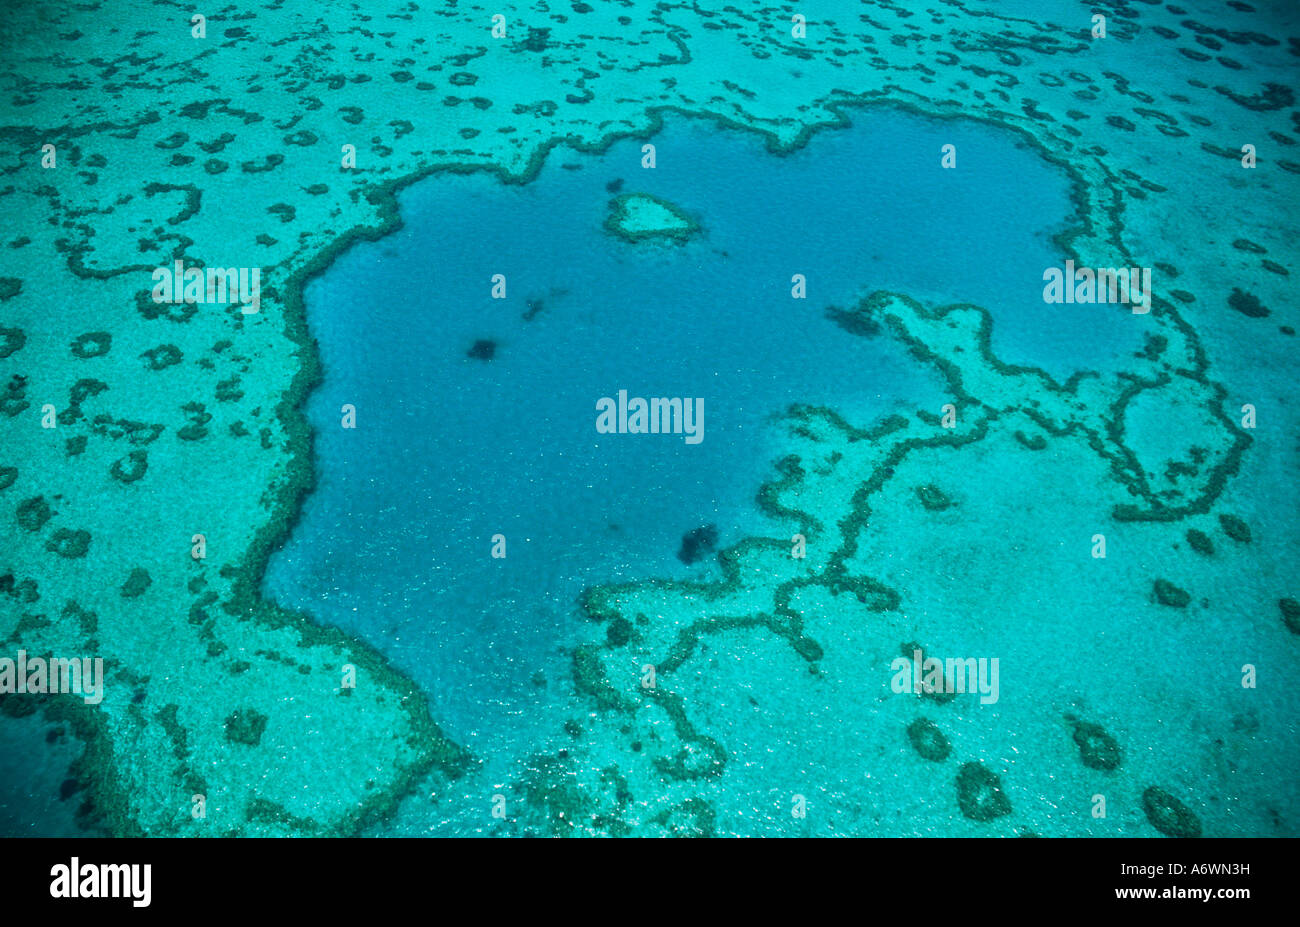 La Grande Barrière de corail, y compris l'insuffisance cardiaque, Whitsunday Islands, dans le Queensland en Australie. Visite en hélicoptère ou en hydravion. Planète Banque D'Images